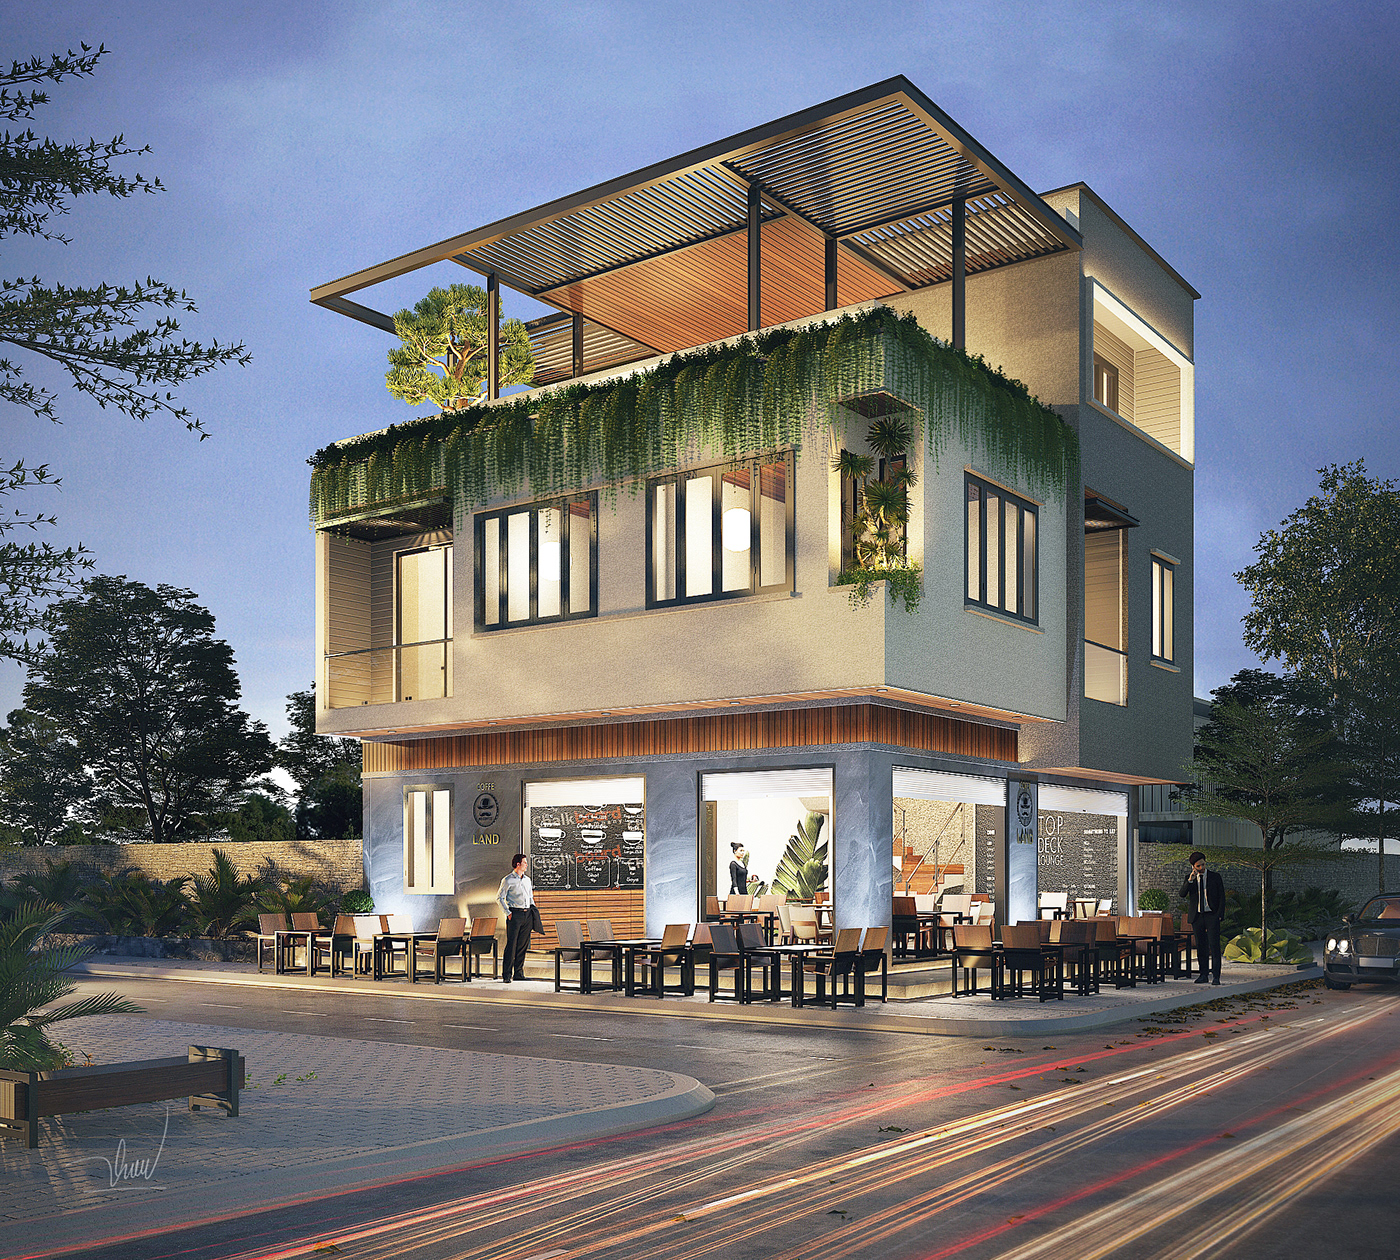 thiết kế Cafe tại Đà Nẵng TH_COFFE HOUSE 1 1536028486